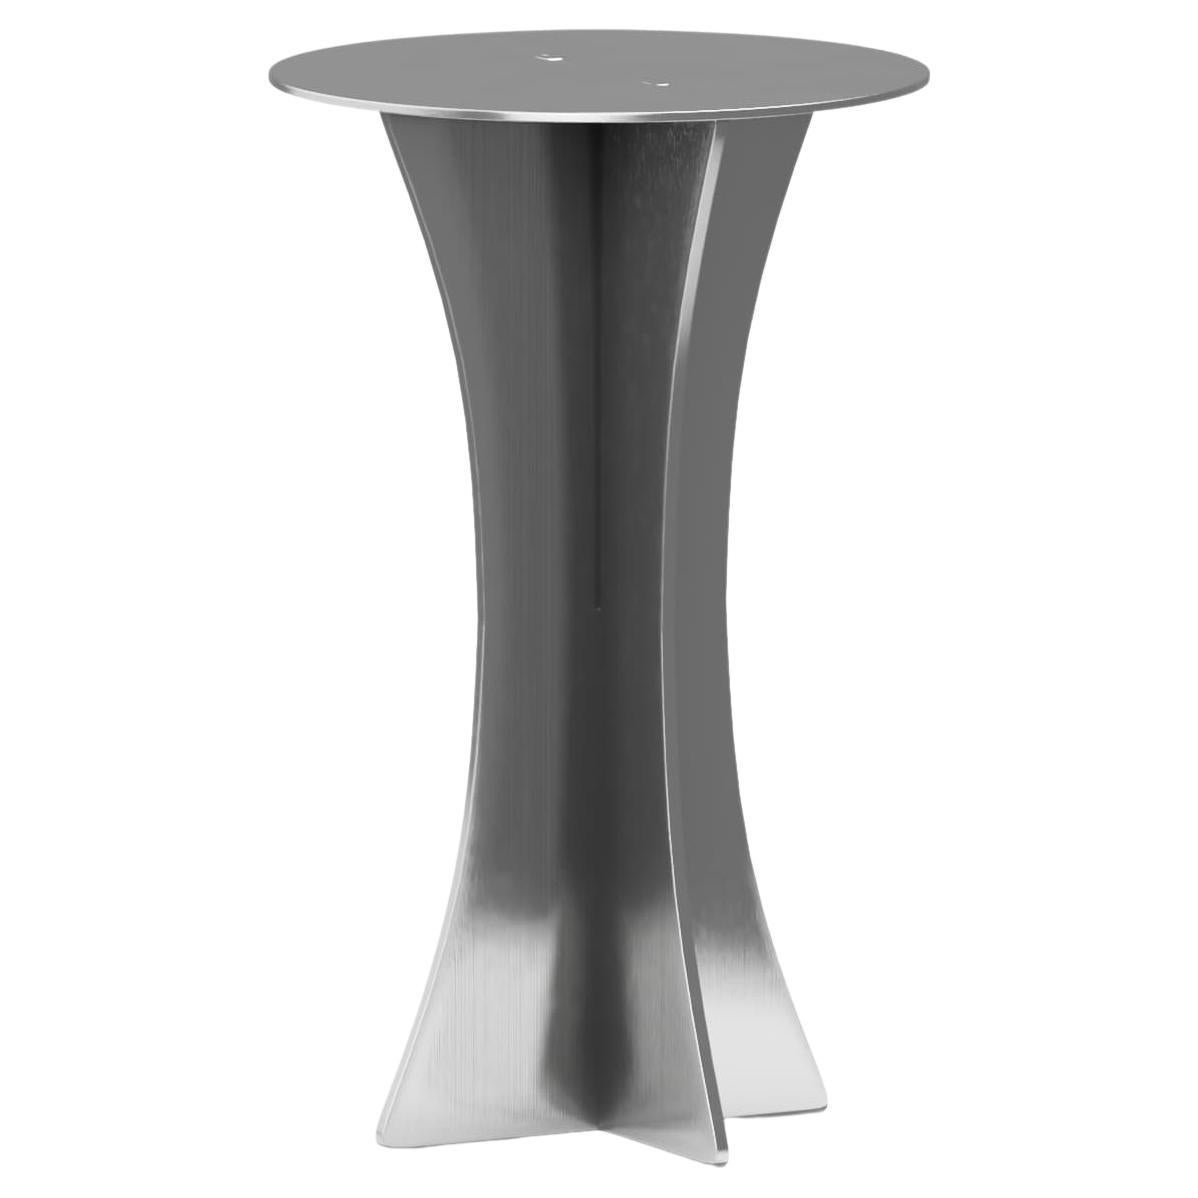 T-01 Table d'appoint en acier inoxydable et métal argenté de style Bauhaus